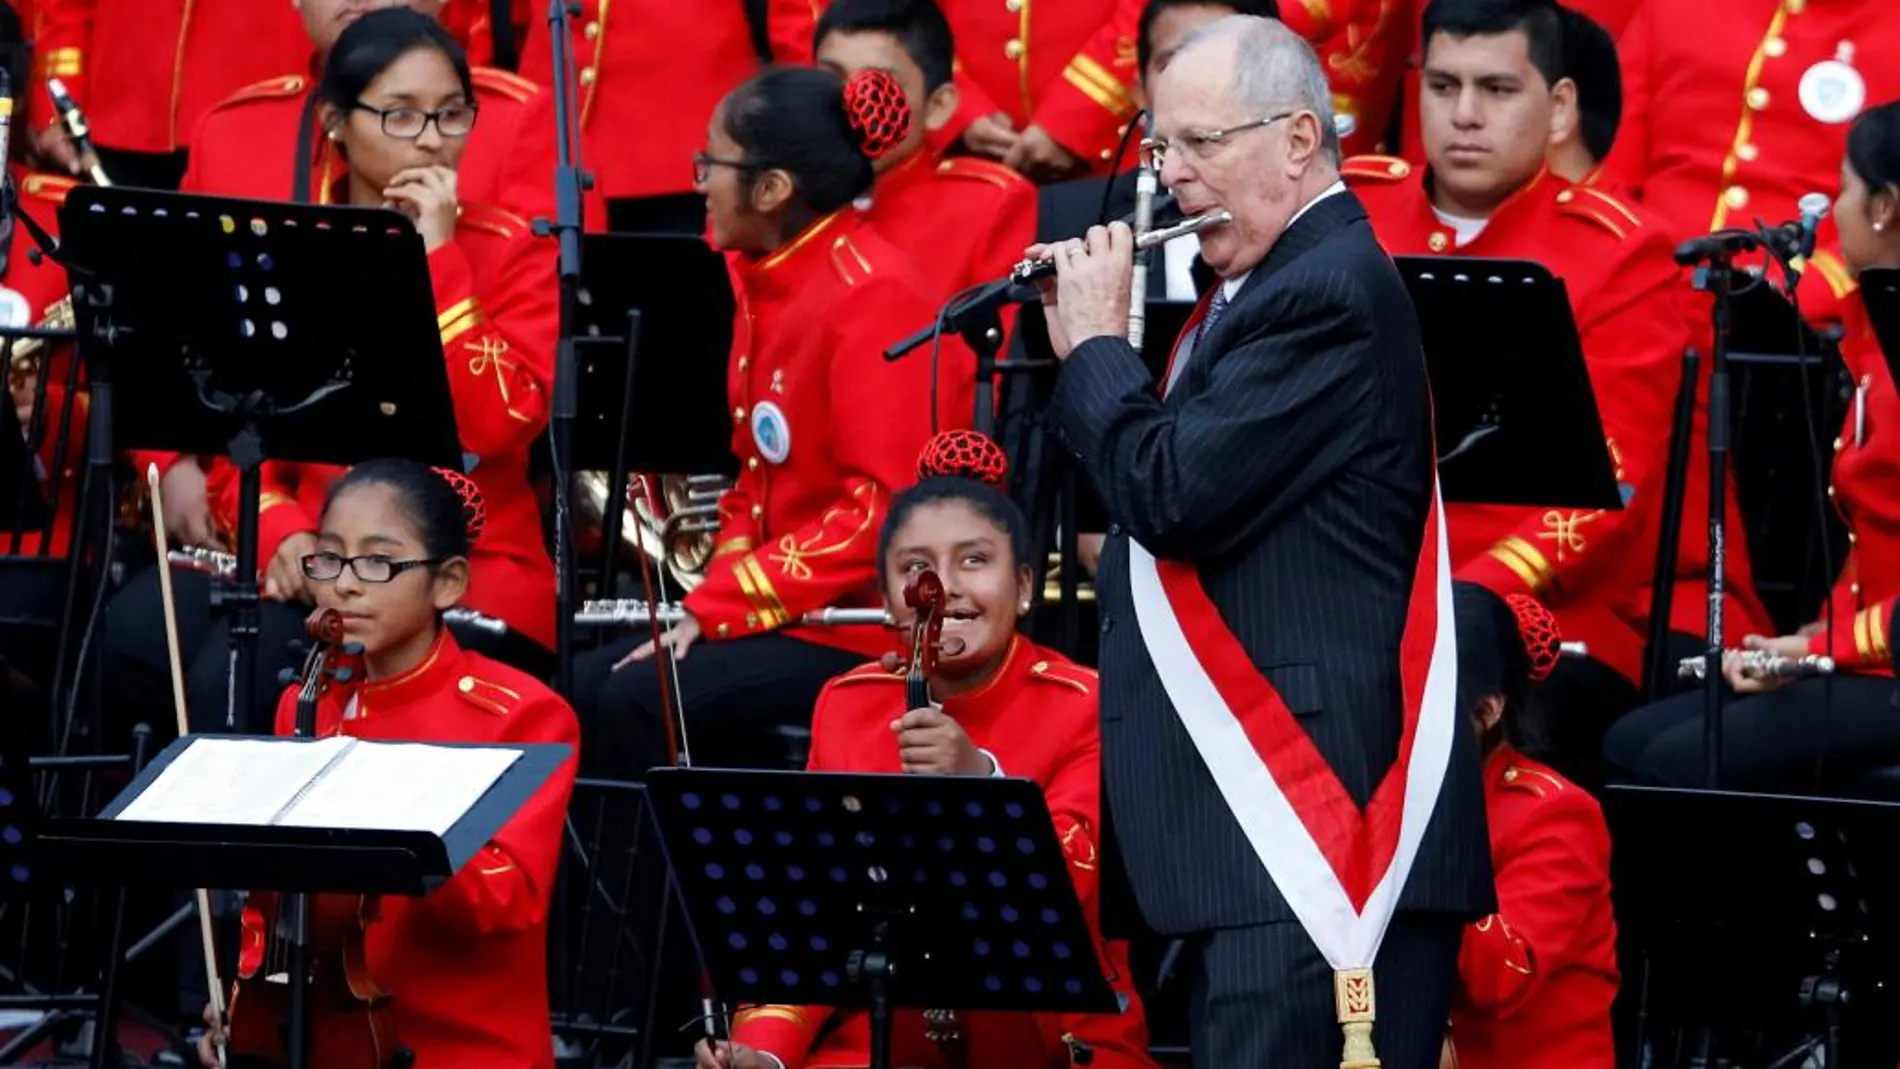 El presidente de Perú, Pedro Pablo Kuczynski, se animó a tocar la flauta con una orquesta sinfónica infantil en el patio del Palacio de Gobierno, tras tomar el juramento a su gabinete ministerial.